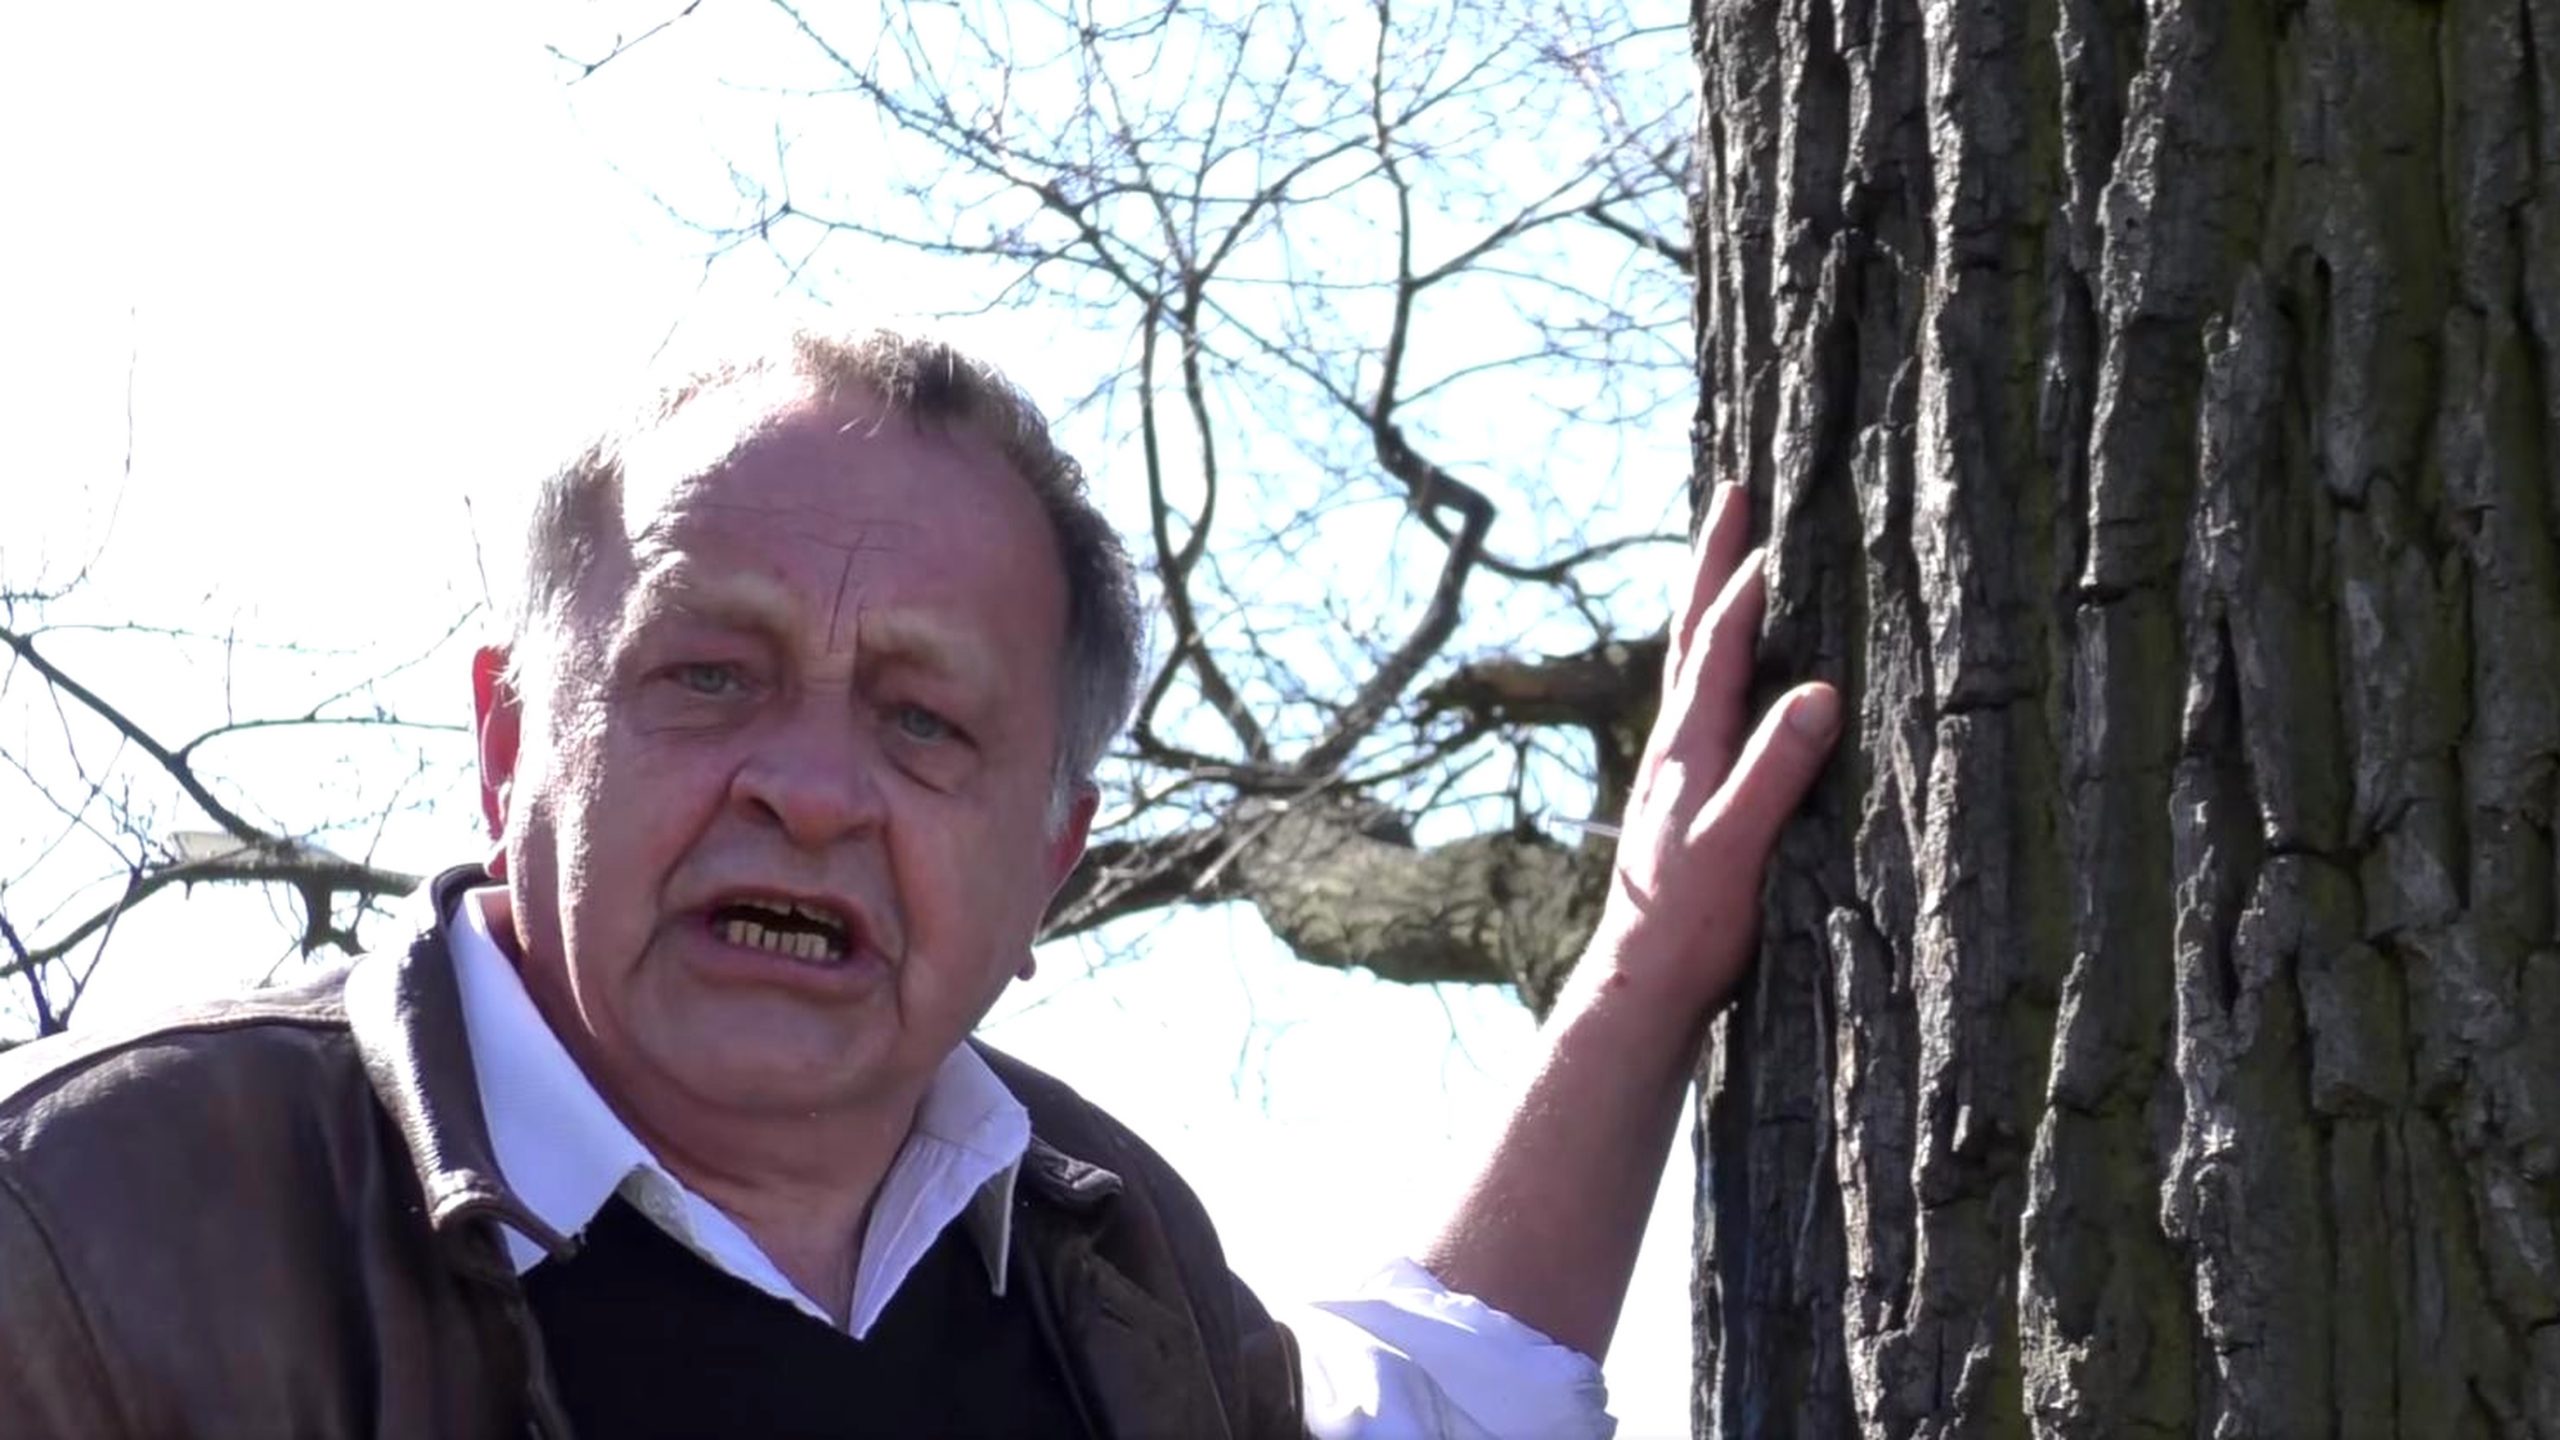 propolski.pl: Protestujący przybił się do drzewa